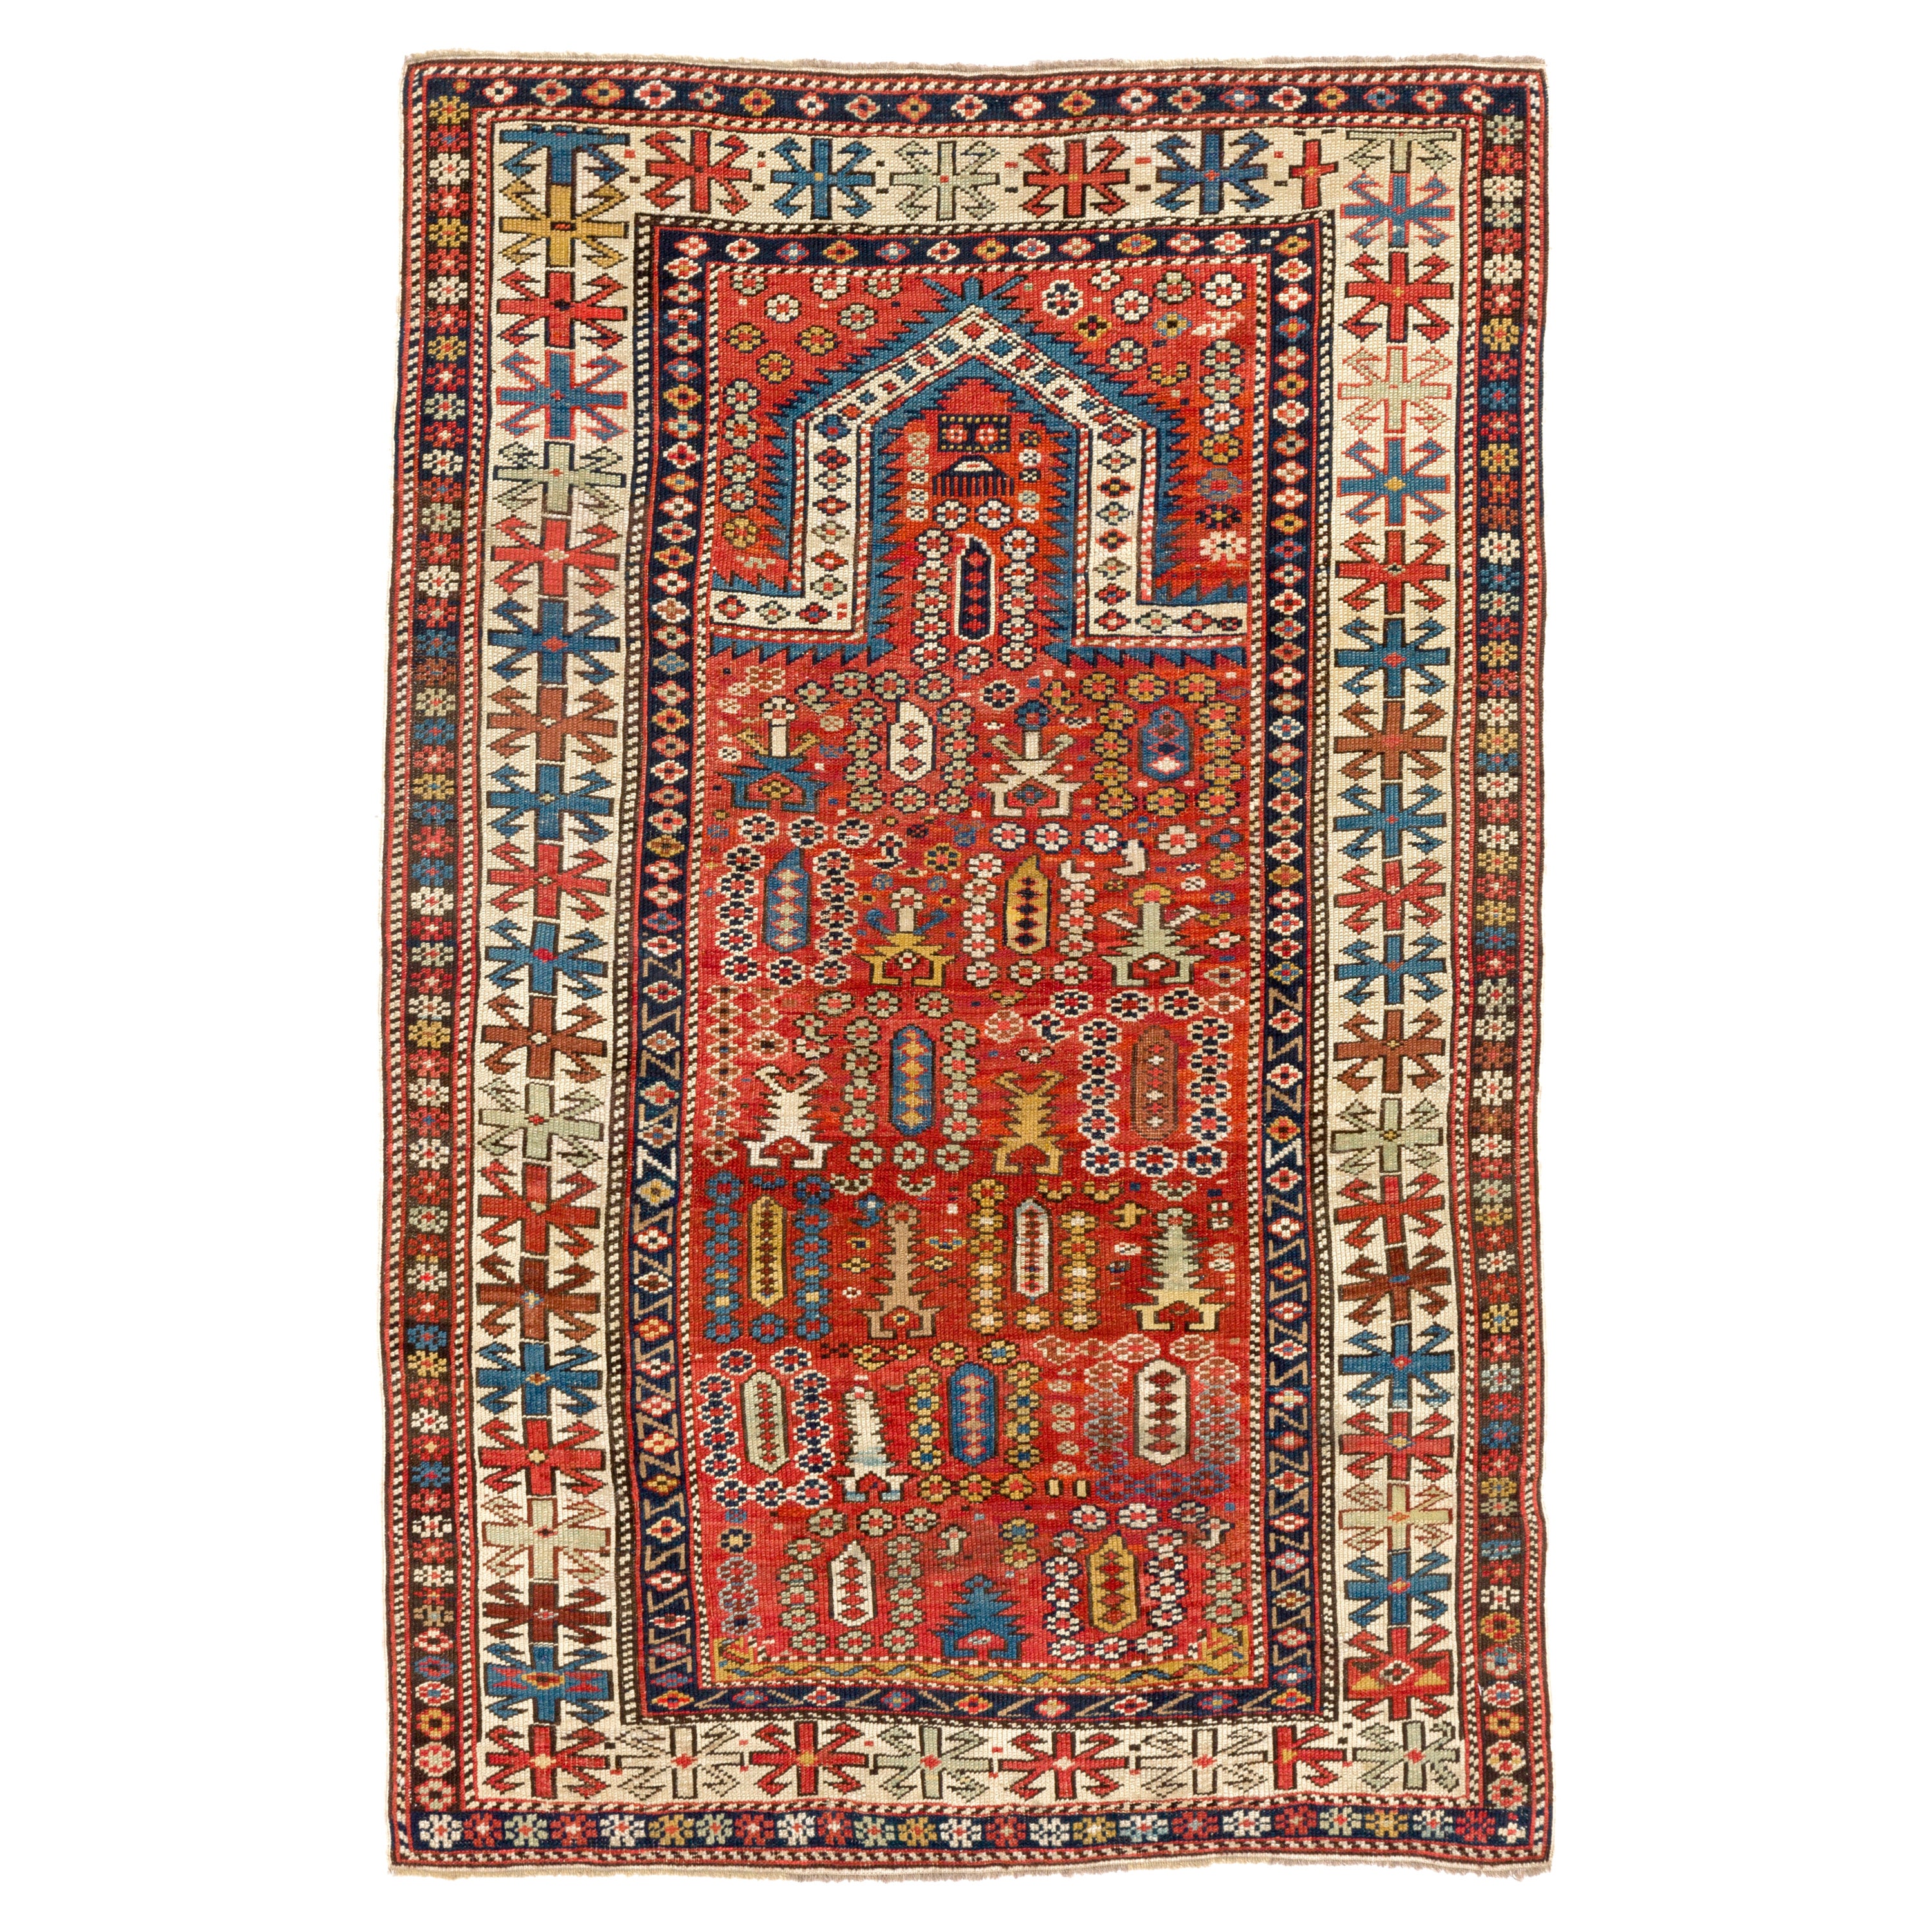 3' x 4'9'' Antique Caucasian Shirvan Prayer Rug